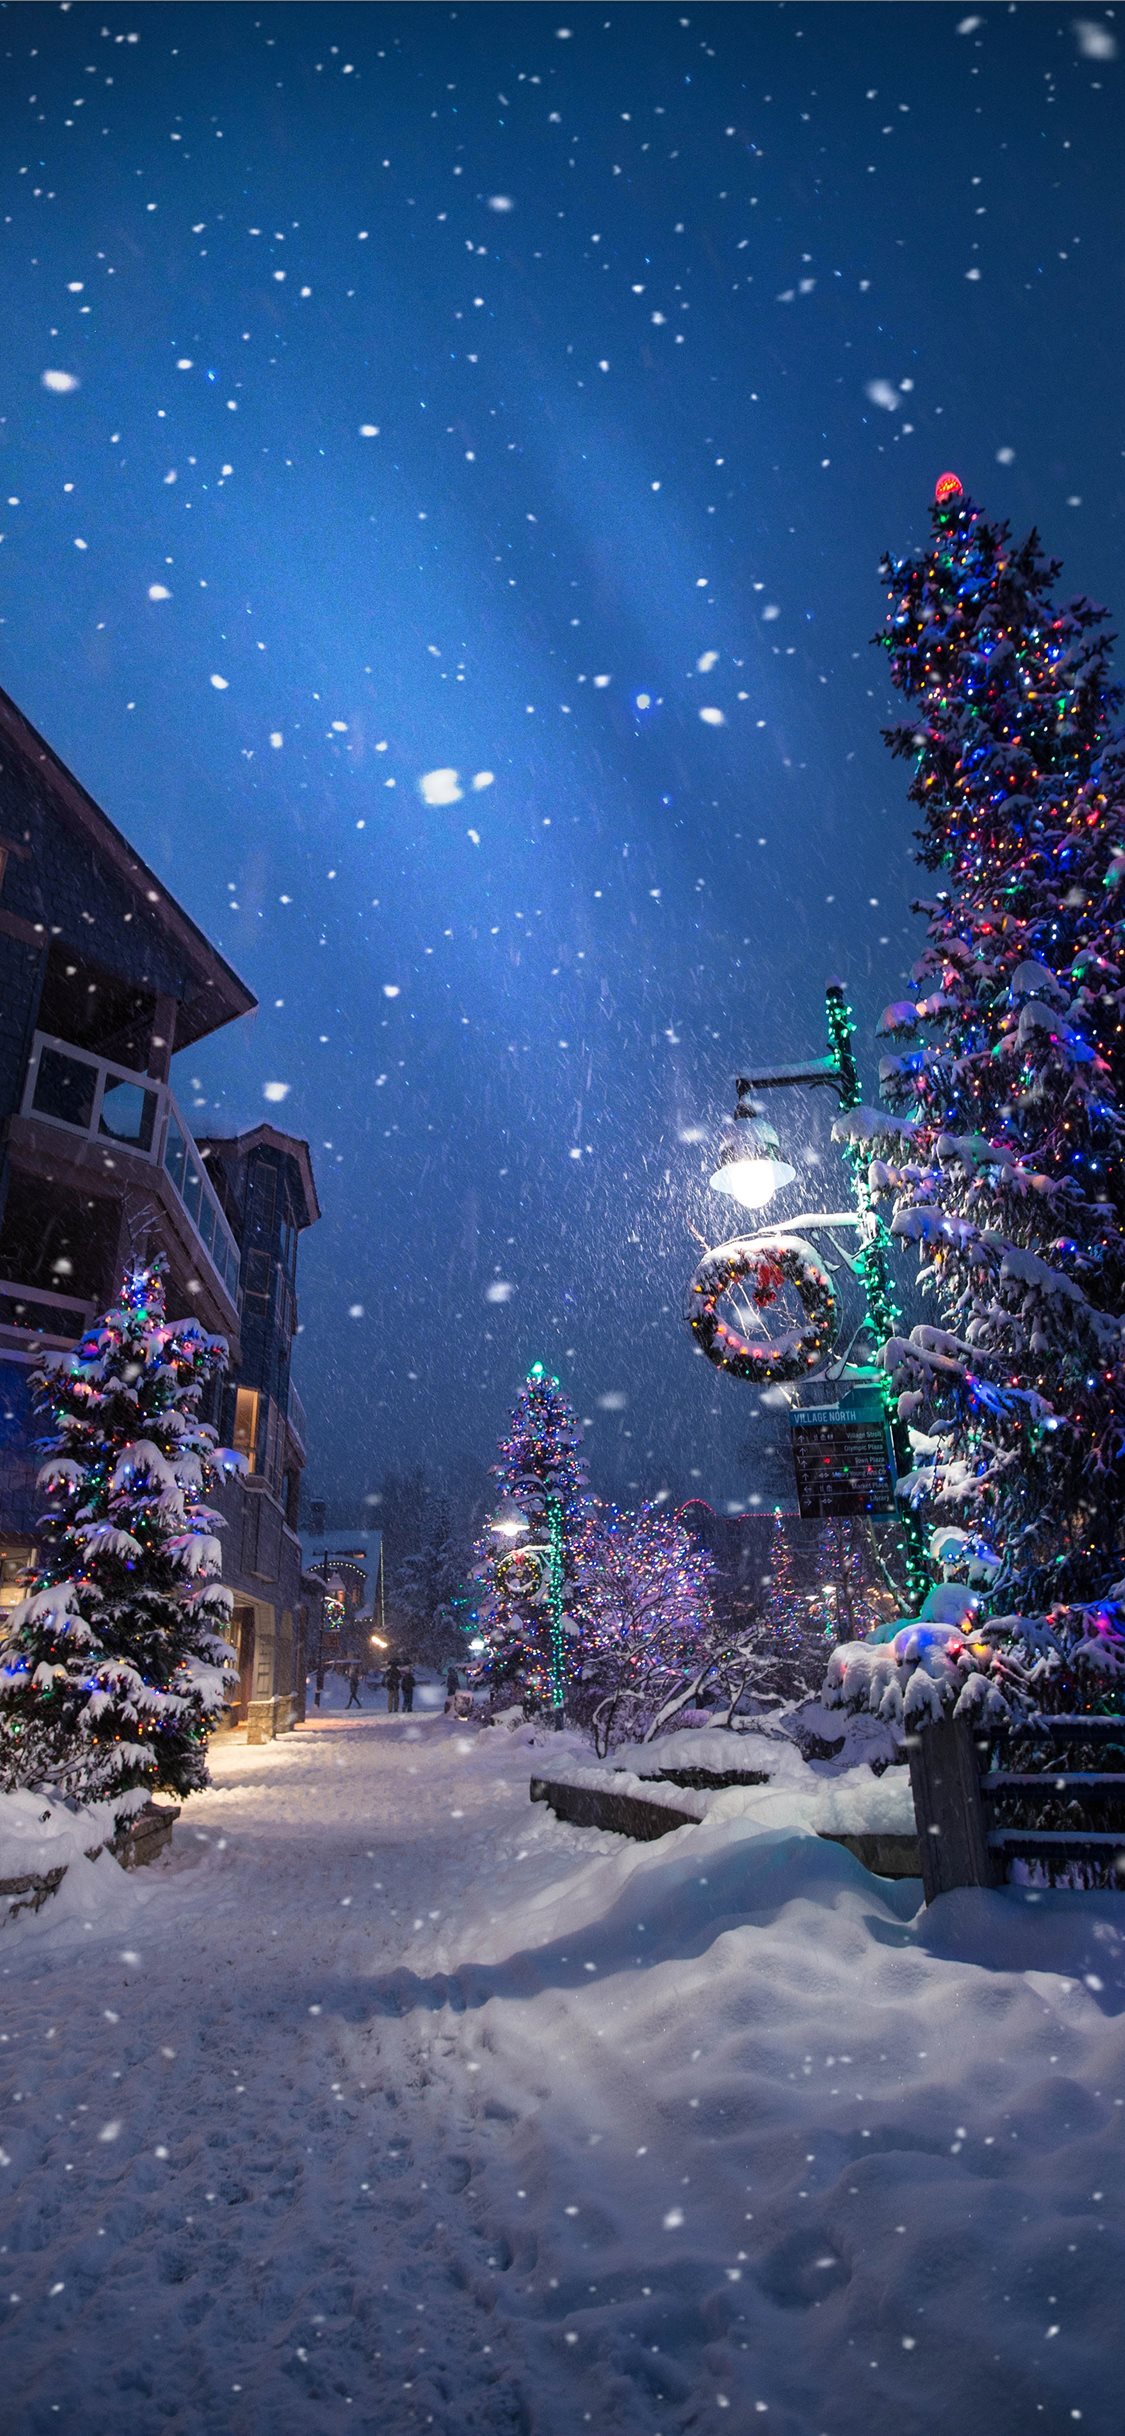 100 Hình ảnh mùa đông tuyết phủ trắng xóa cực đẹp